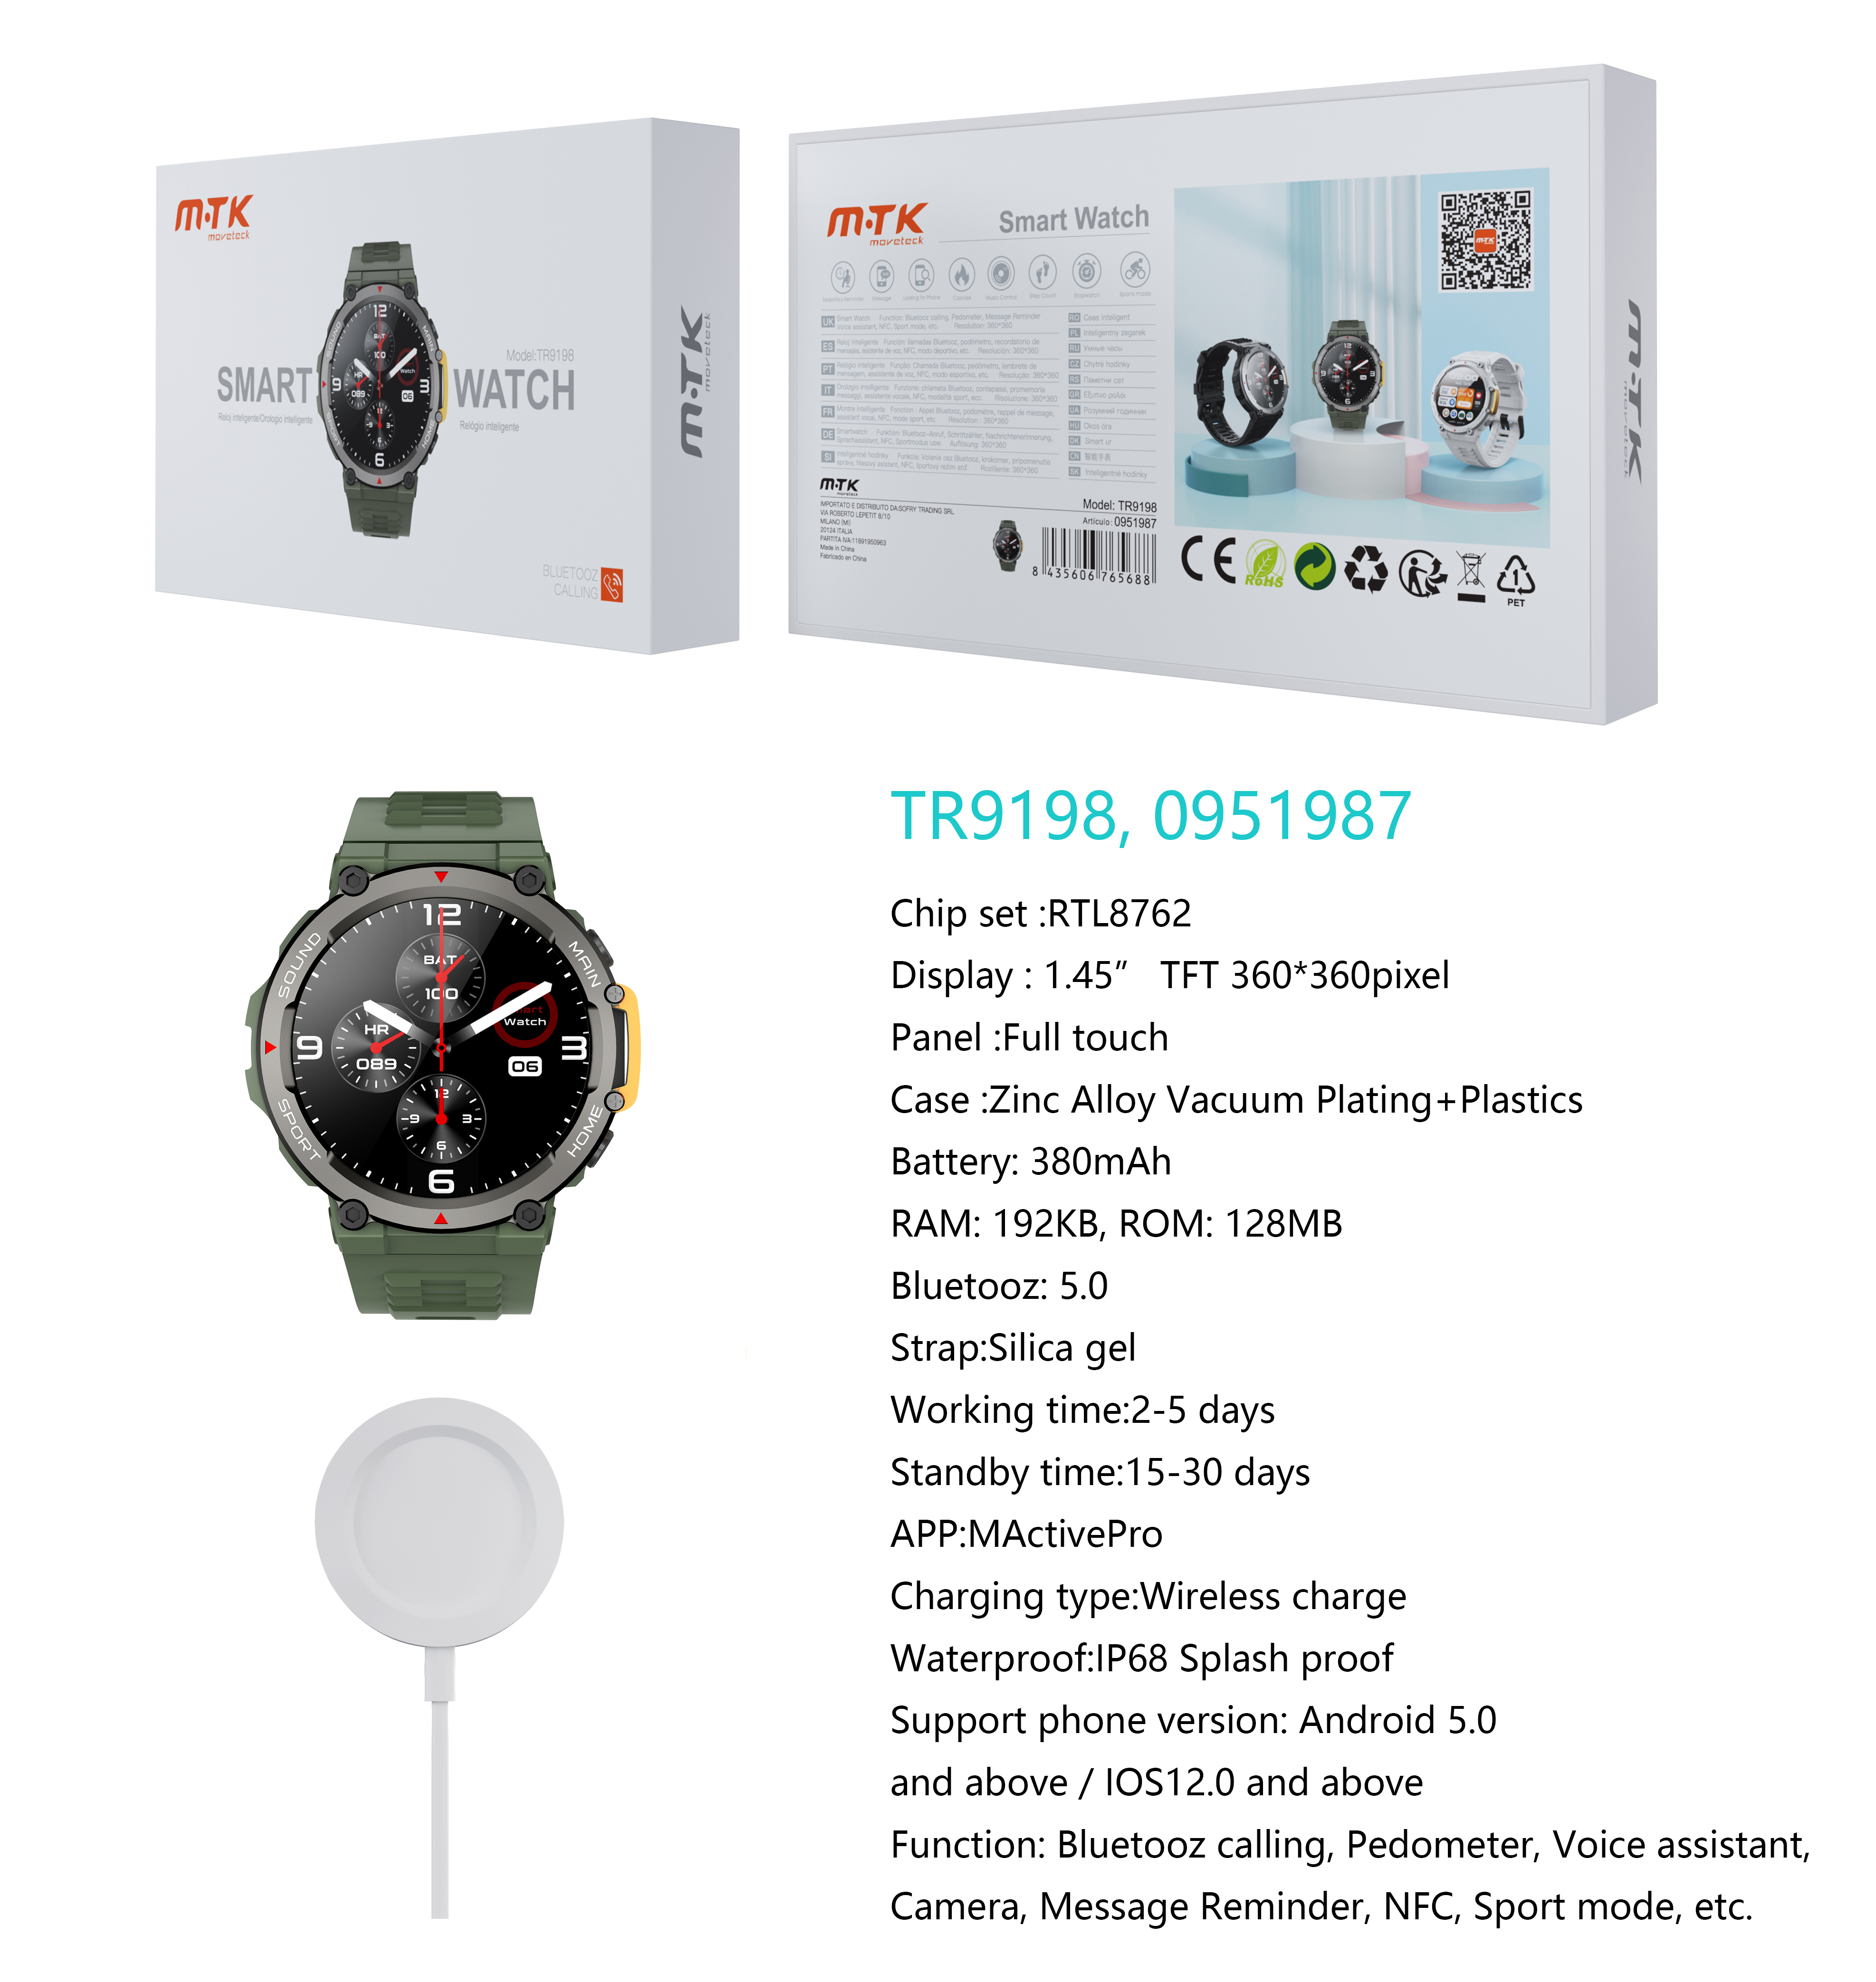 TR9198 VE Reloj Inteligente con bluetooth 5.0, Pantalla tactil de 1.45 pulgadas Con Cargador inalambrico, Soporta NFC de Puerta Inteligente, llemadas,